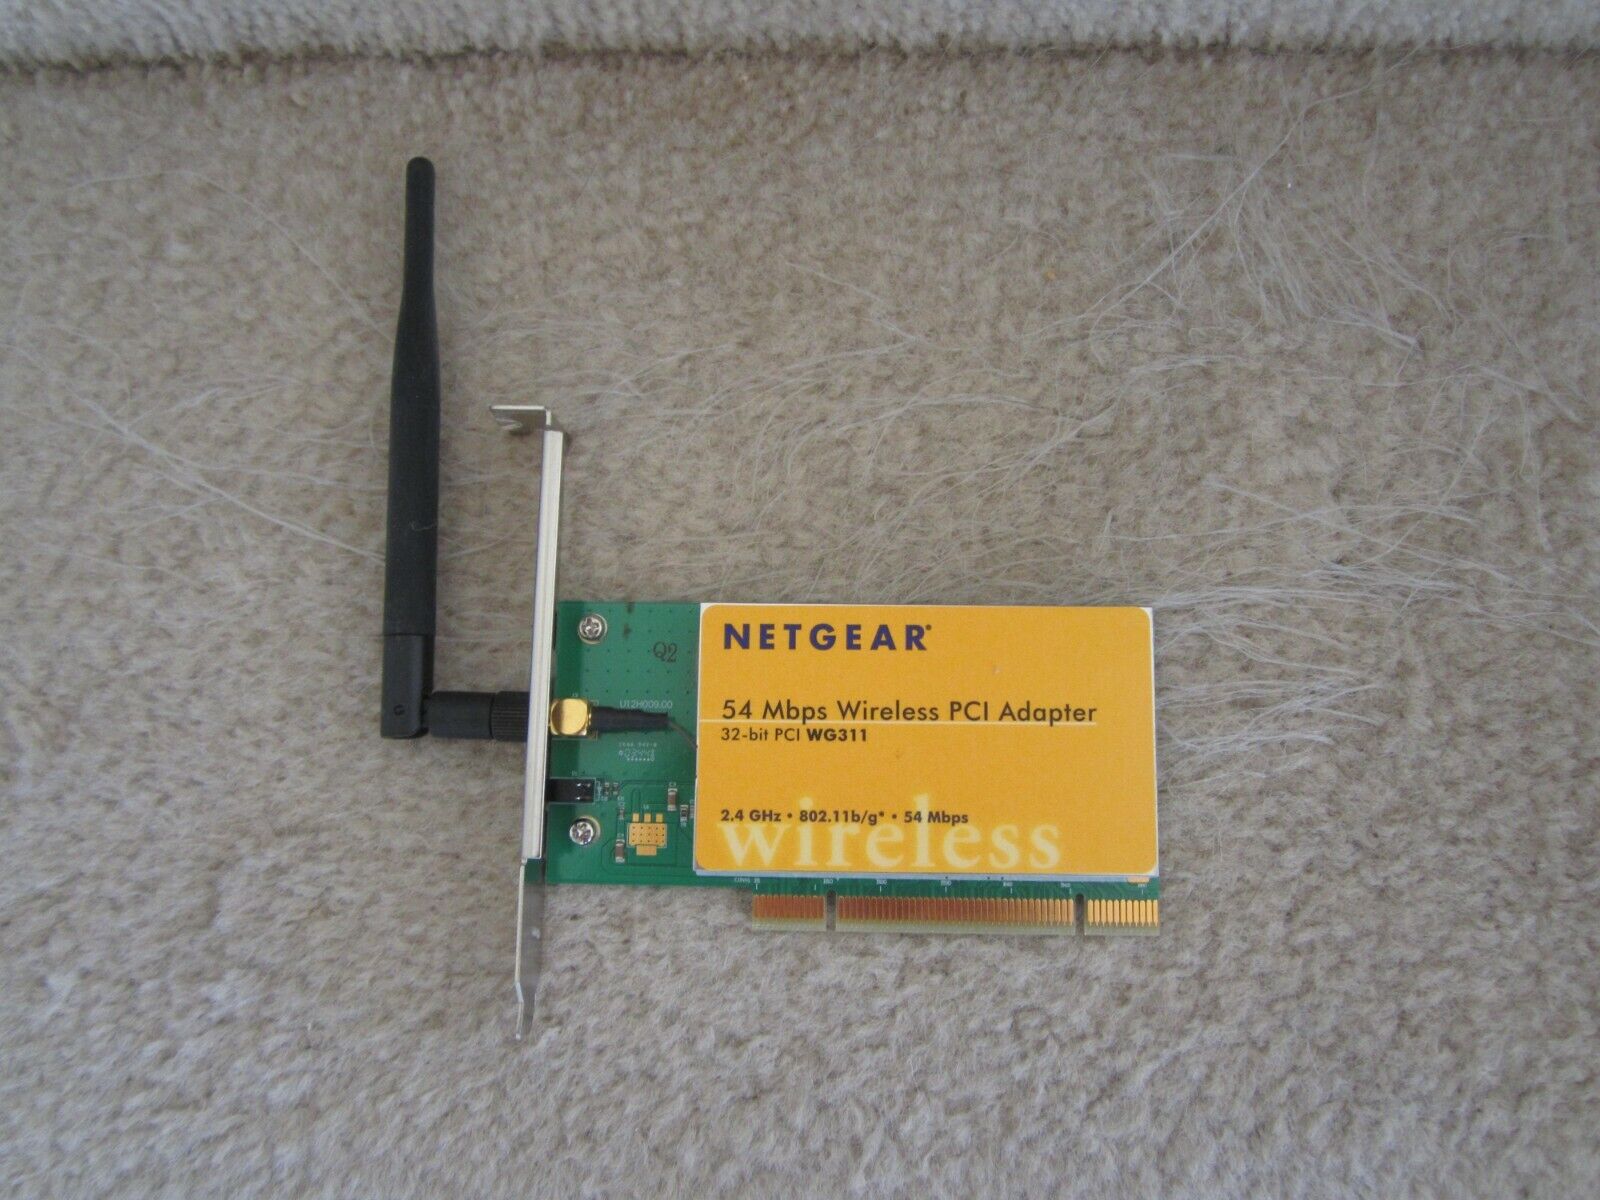 NETGEAR WG311 54MBPS 32-bit 2.4GHz WIRELESS PCI ADAPTER CARD w/ANTENNA - WORKS